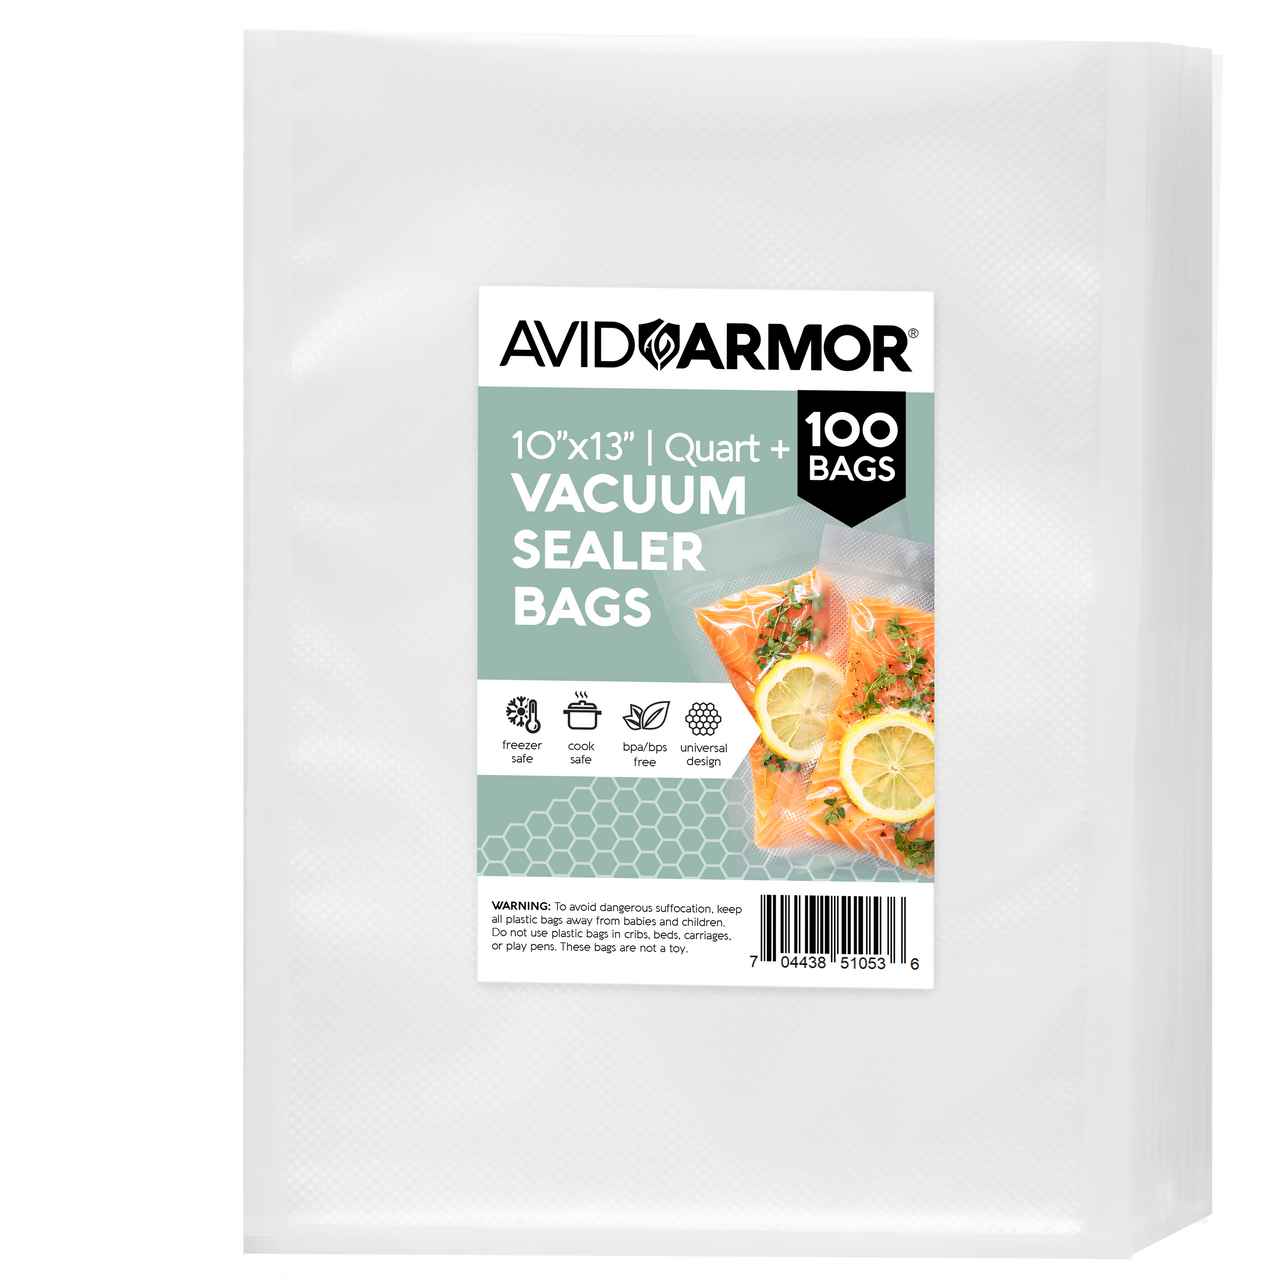 Avid Armor Vacuum Sealer Bags 11x50 Rolls 2 Pack for Food Saver